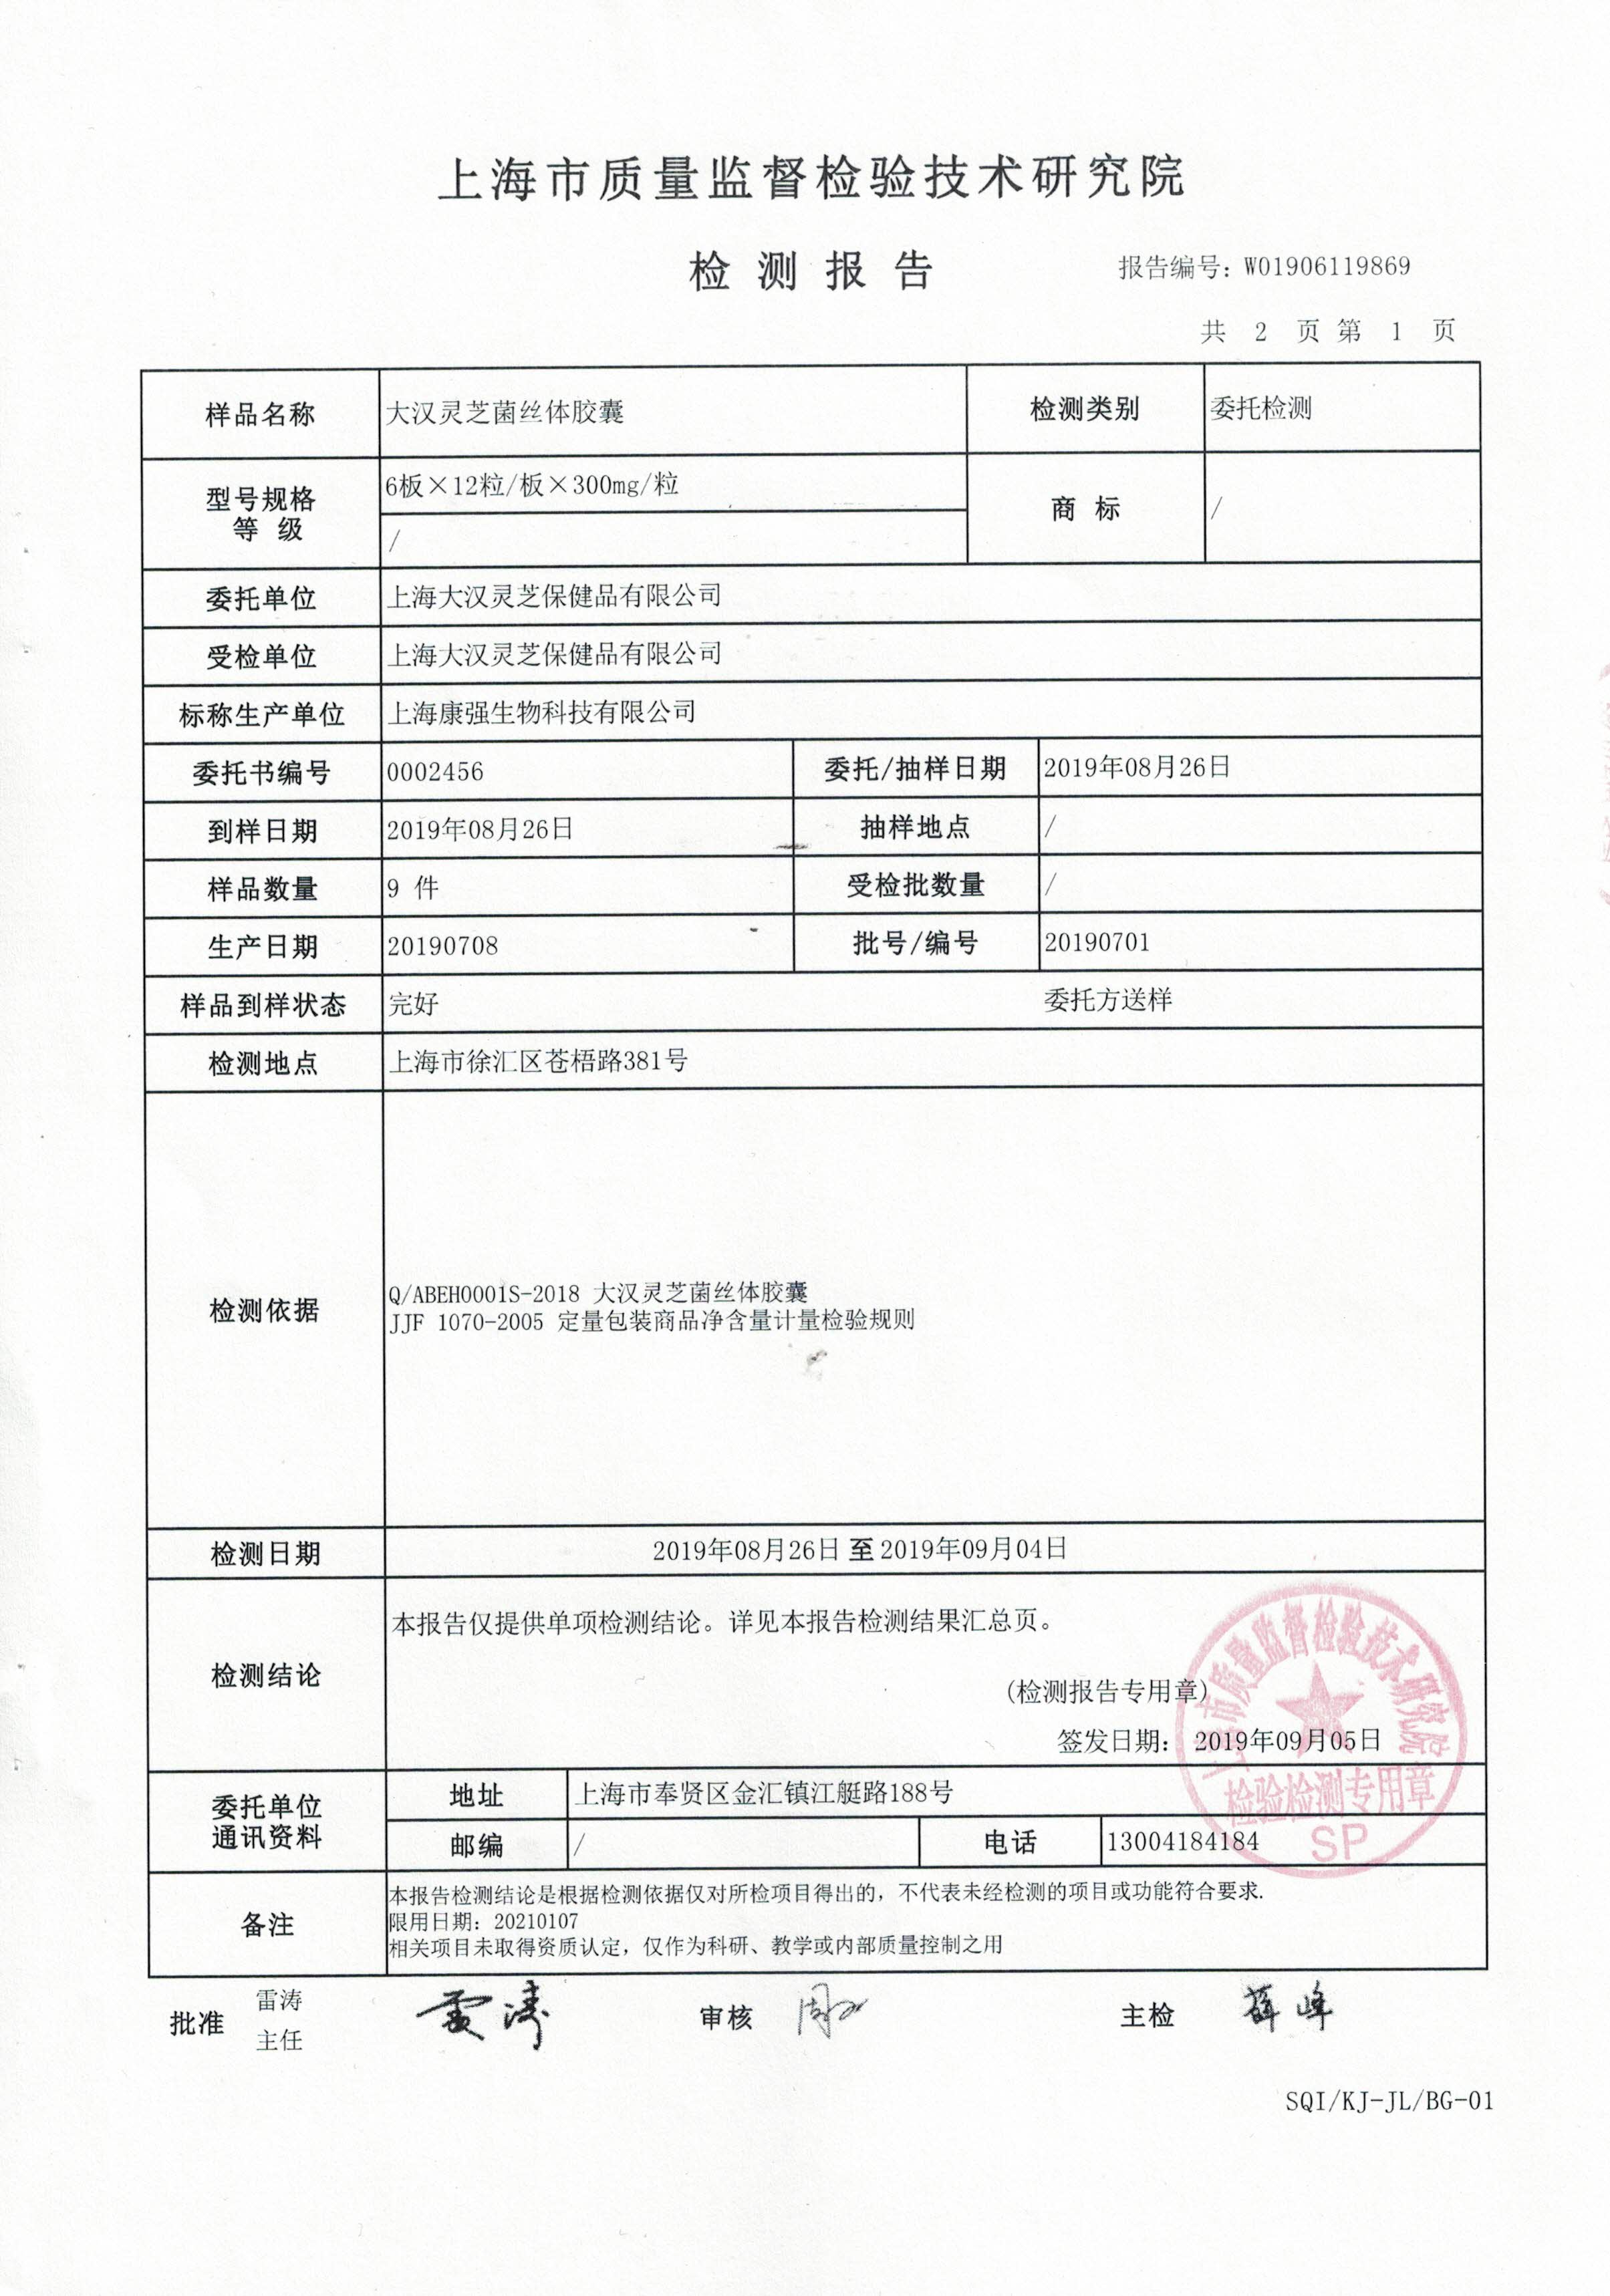 2019年 8月26日 大汉灵芝菌丝体胶囊 产品检测报告